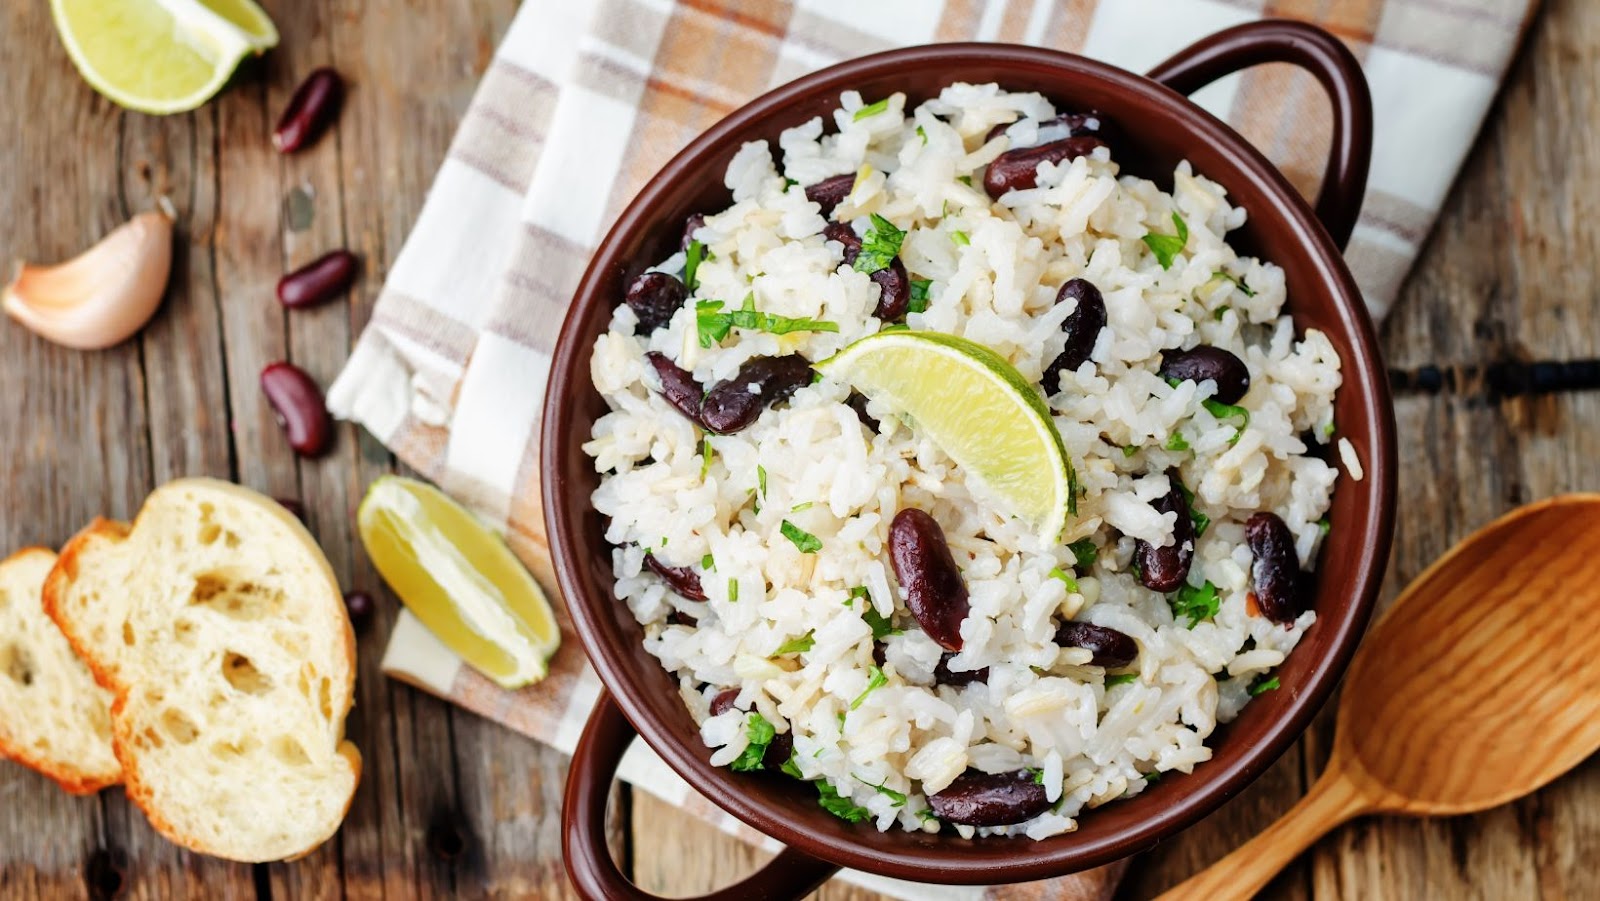 Ways to Enjoy Cilantro Lime Rice